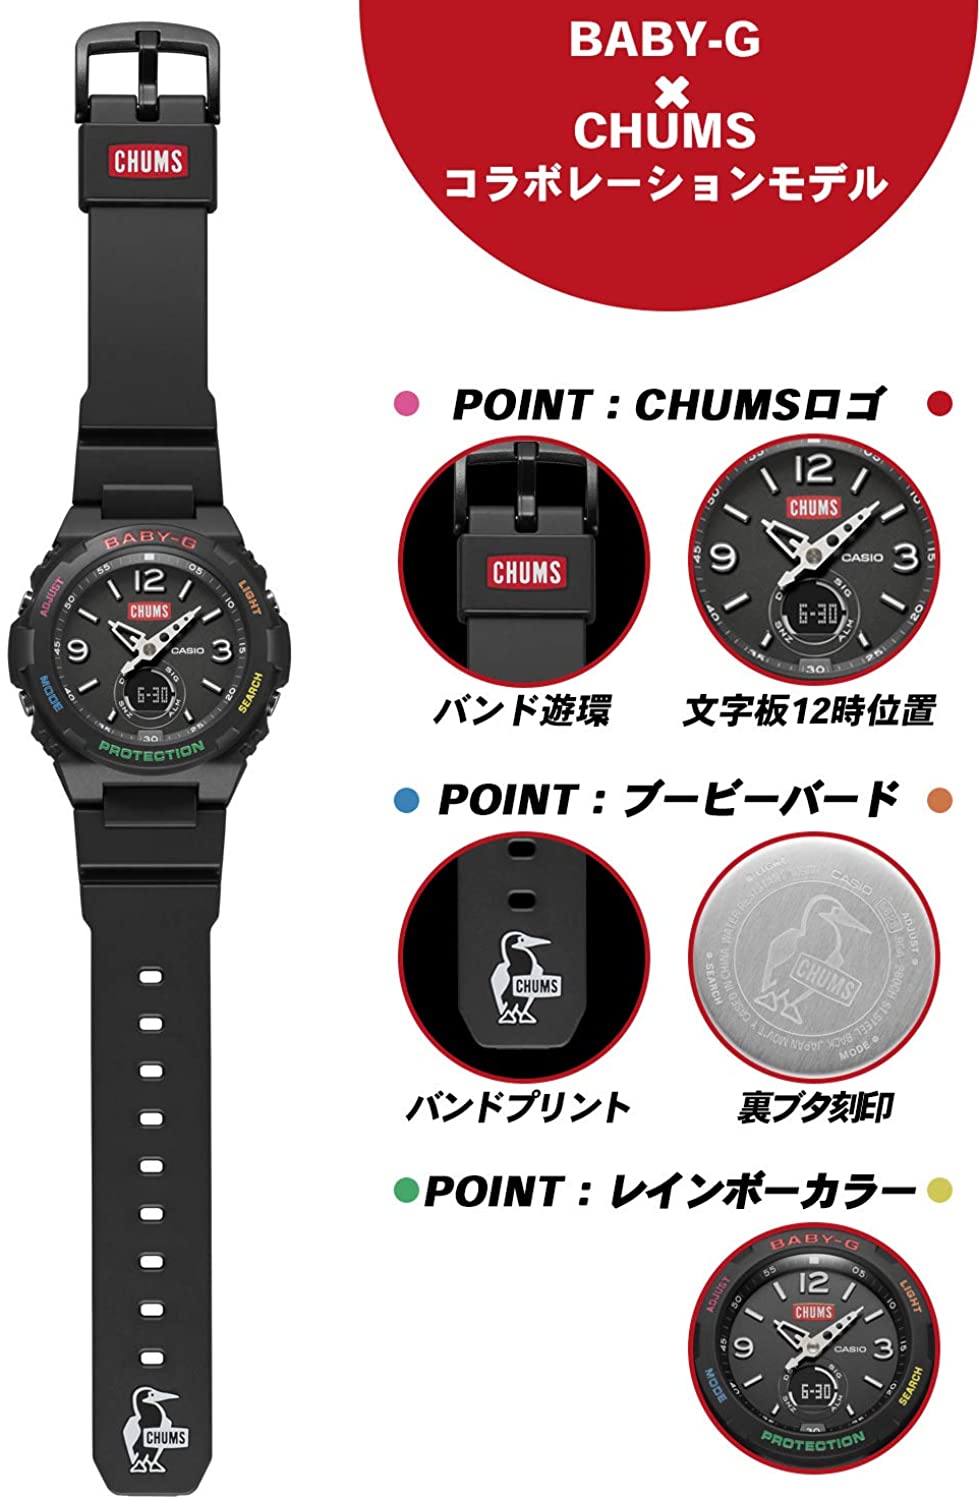 レビュー高評価の商品！ きはらく CHUMS BABY-G 腕時計(アナログ